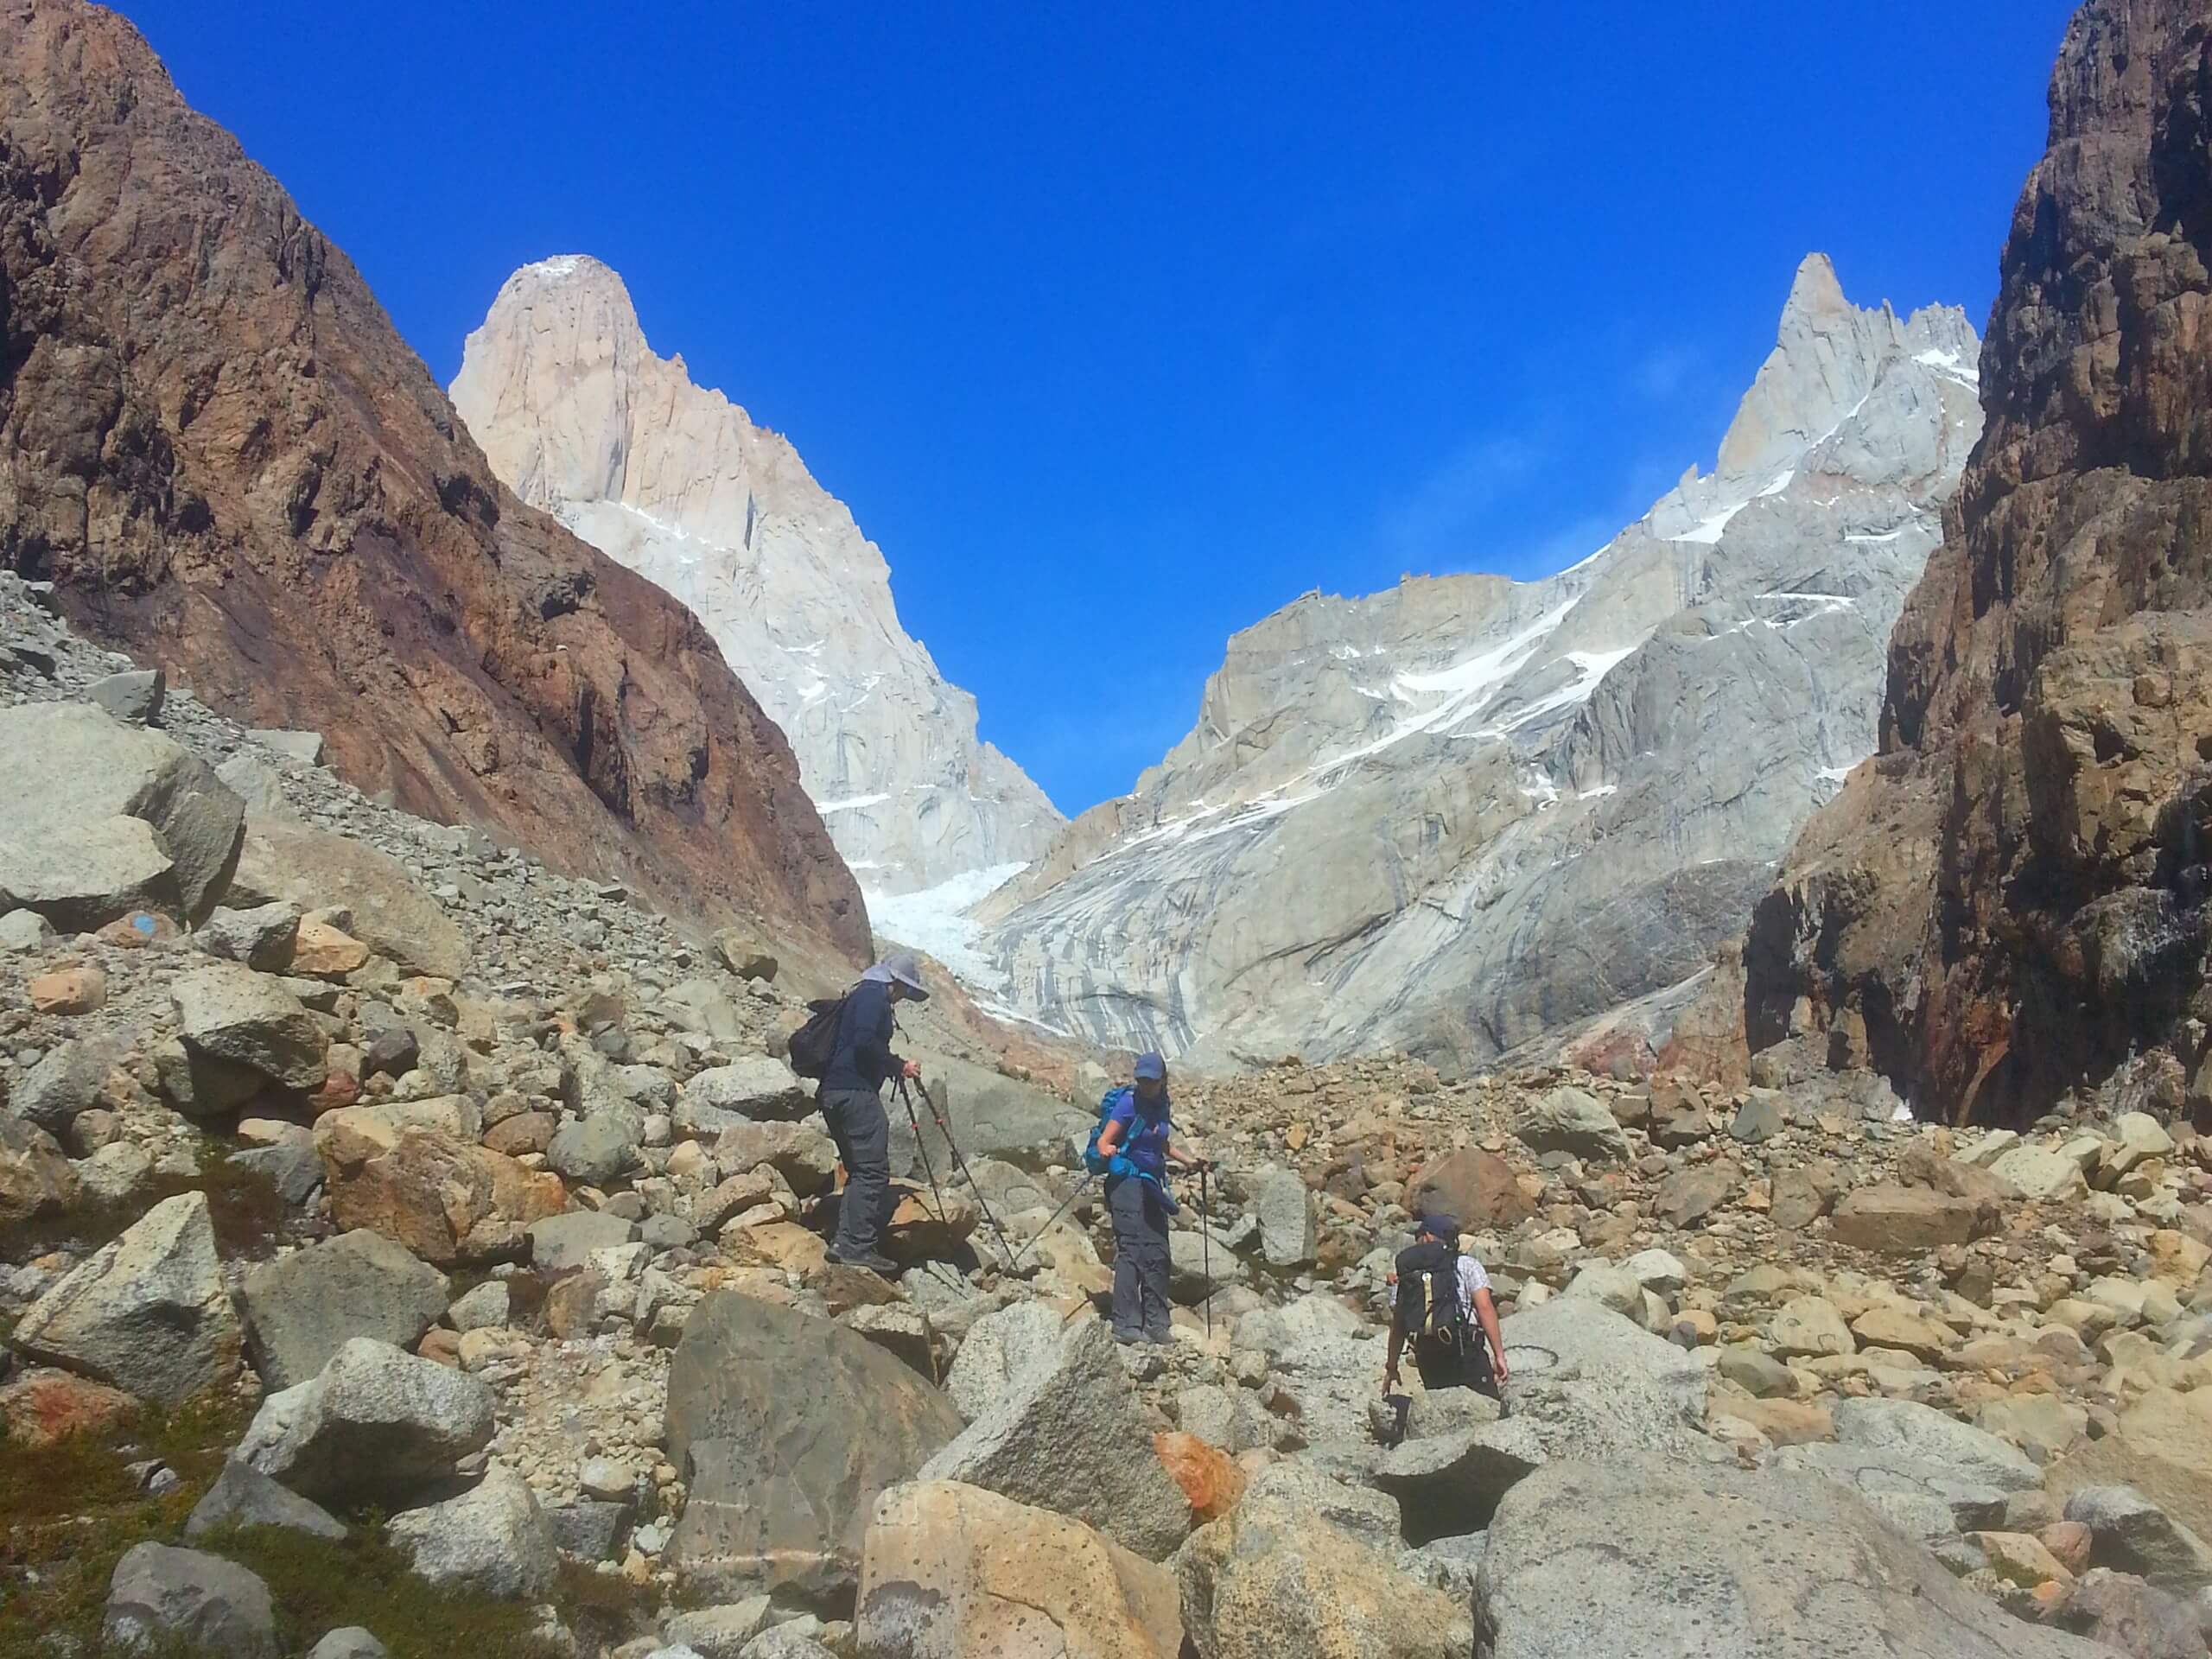 Group of hikers walking in Patagonia